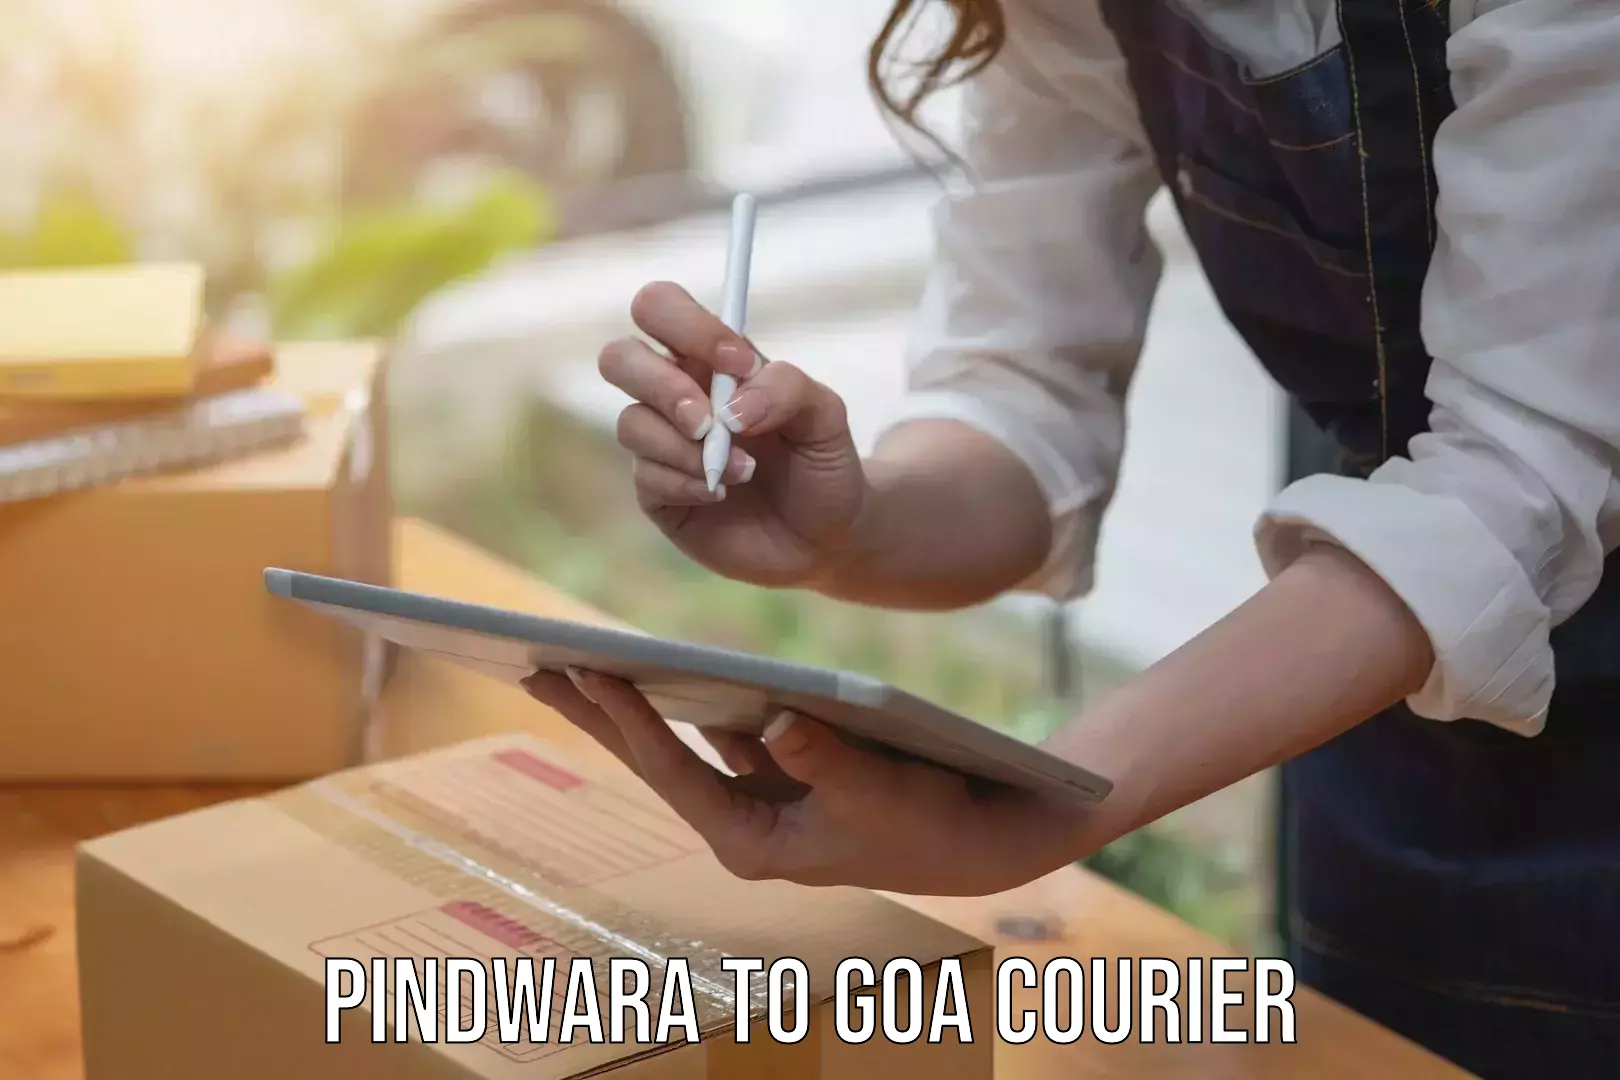 Return courier service Pindwara to Panaji